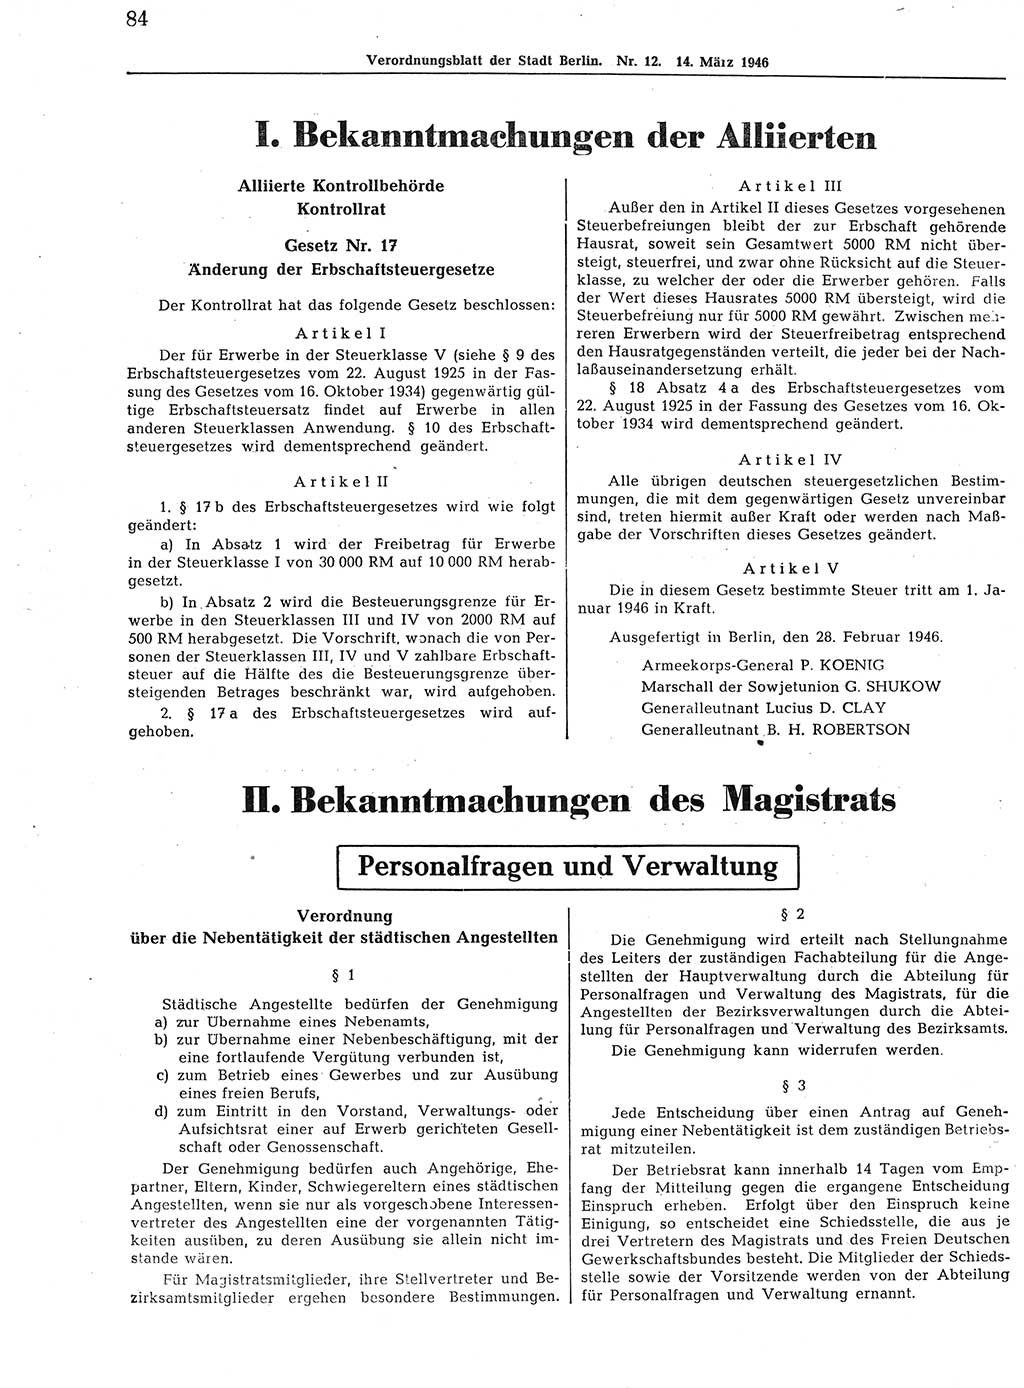 Verordnungsblatt (VOBl.) der Stadt Berlin, für Groß-Berlin 1946, Seite 84 (VOBl. Bln. 1946, S. 84)